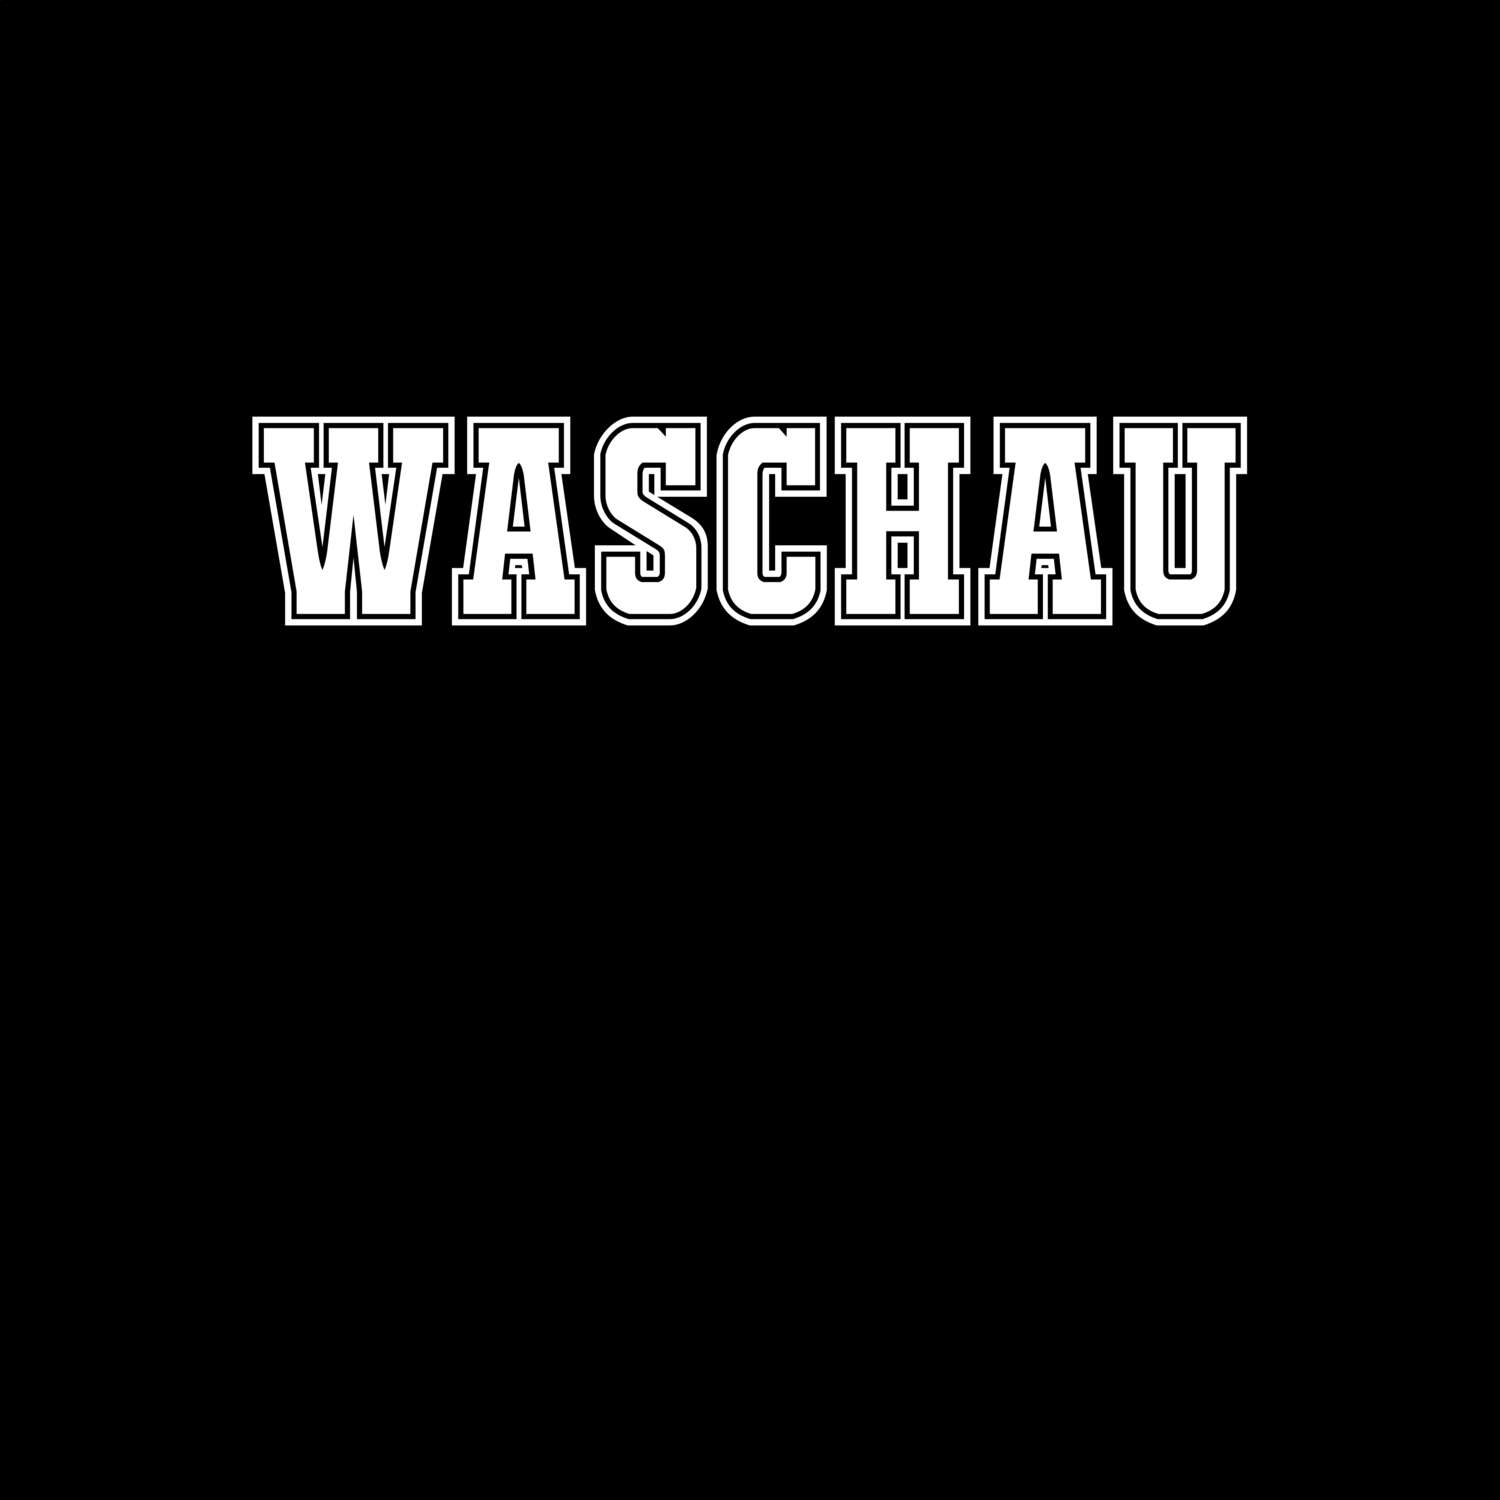 Waschau T-Shirt »Classic«